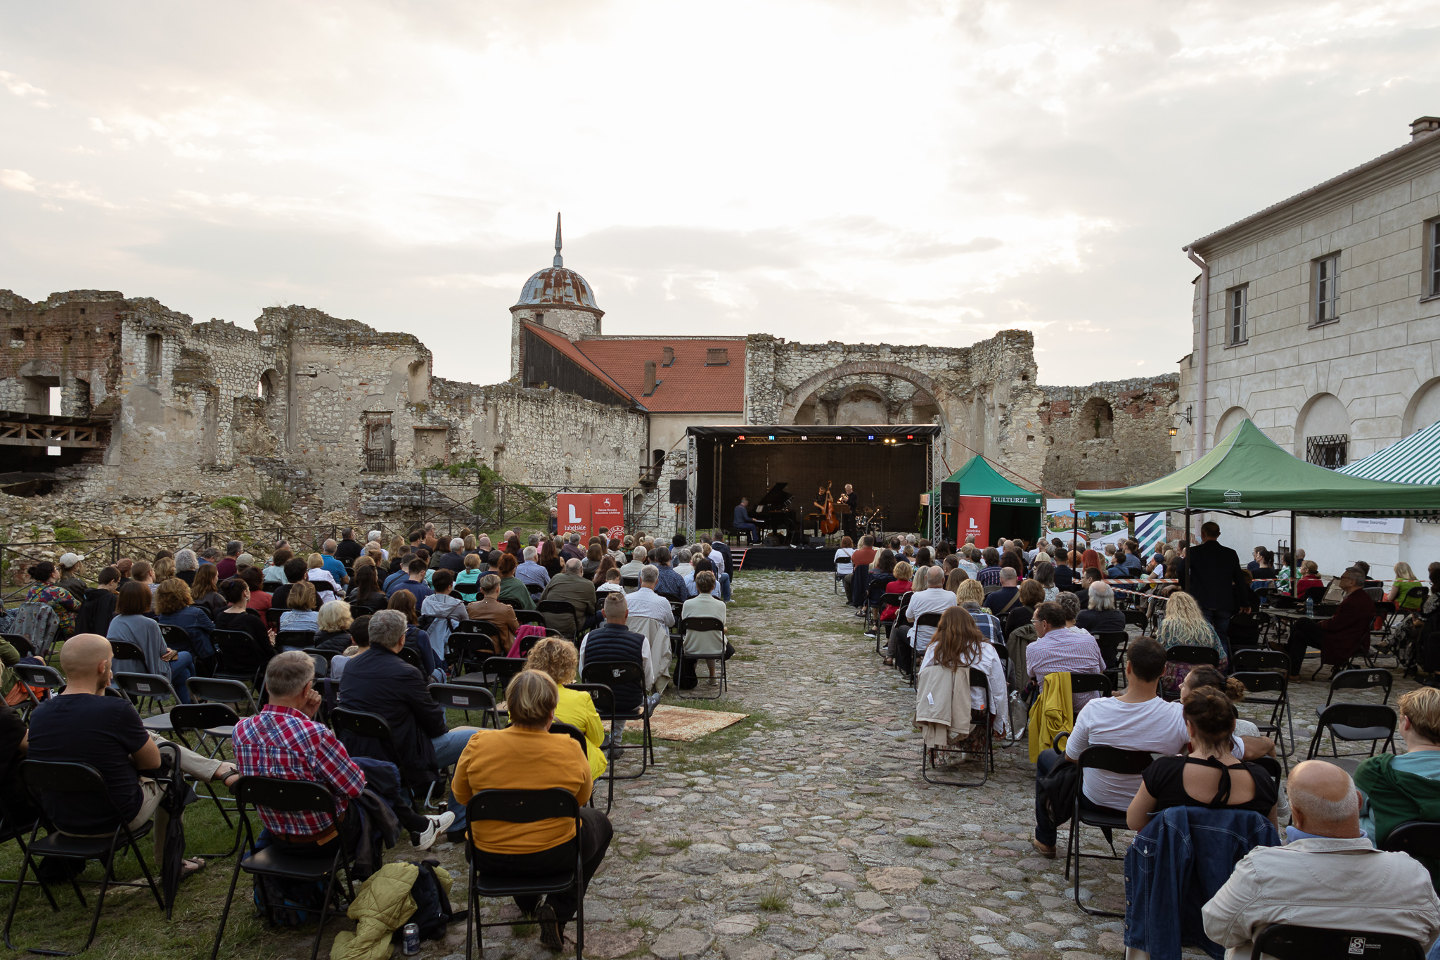 Jazznowiec Festiwal — Foto © Arkadiusz Tarłowski